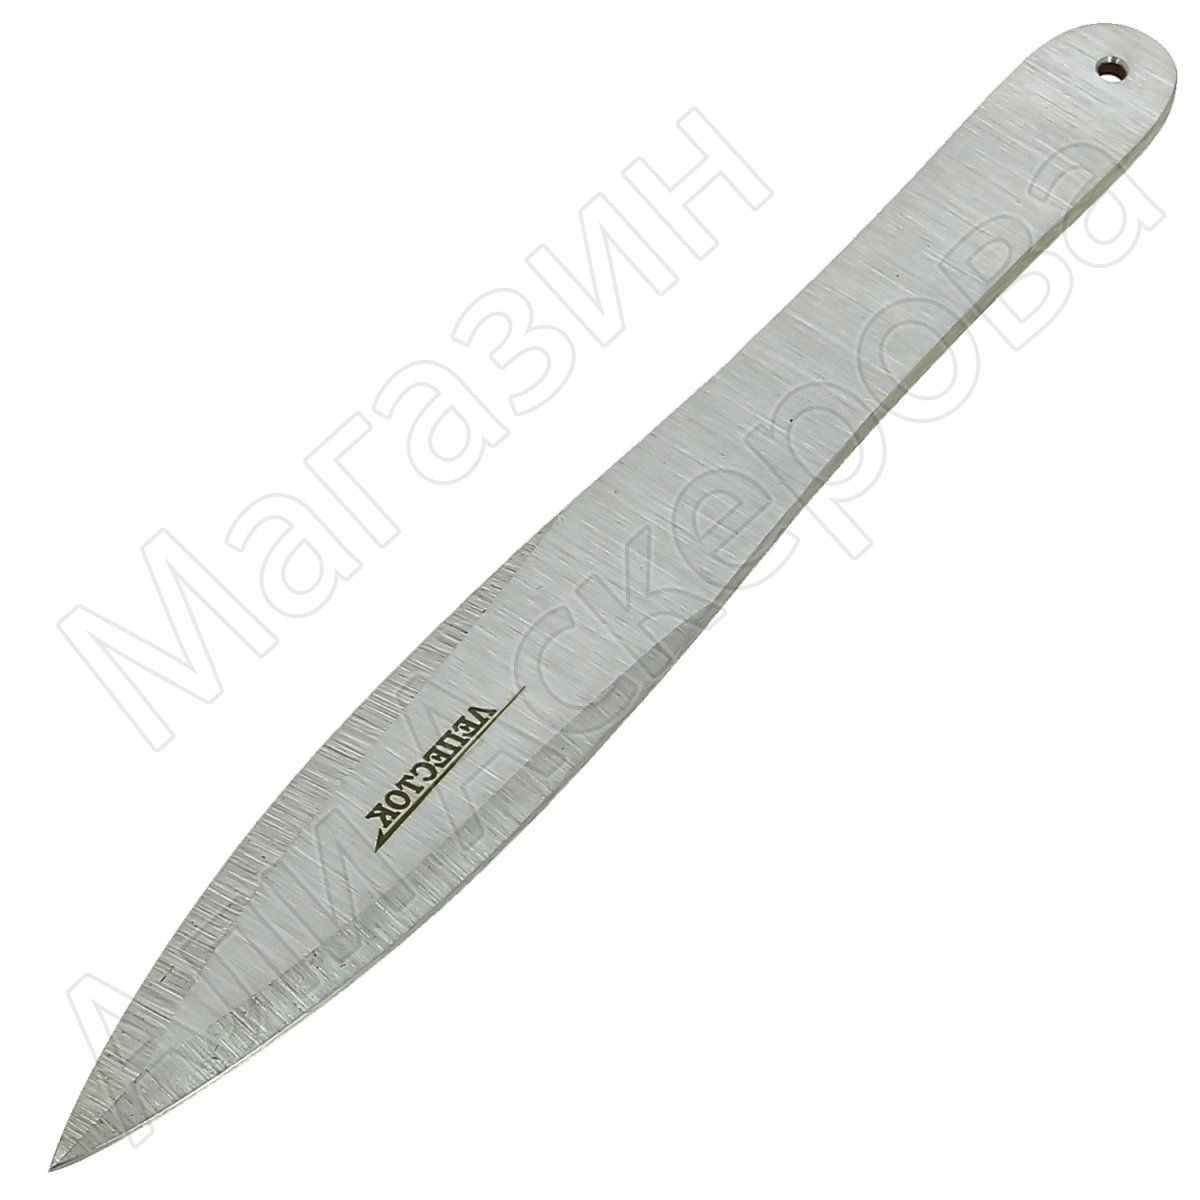 Ножи - всё о ножах: Чертежи ножей | Чертеж ножа Shing-Bushcraft Badger